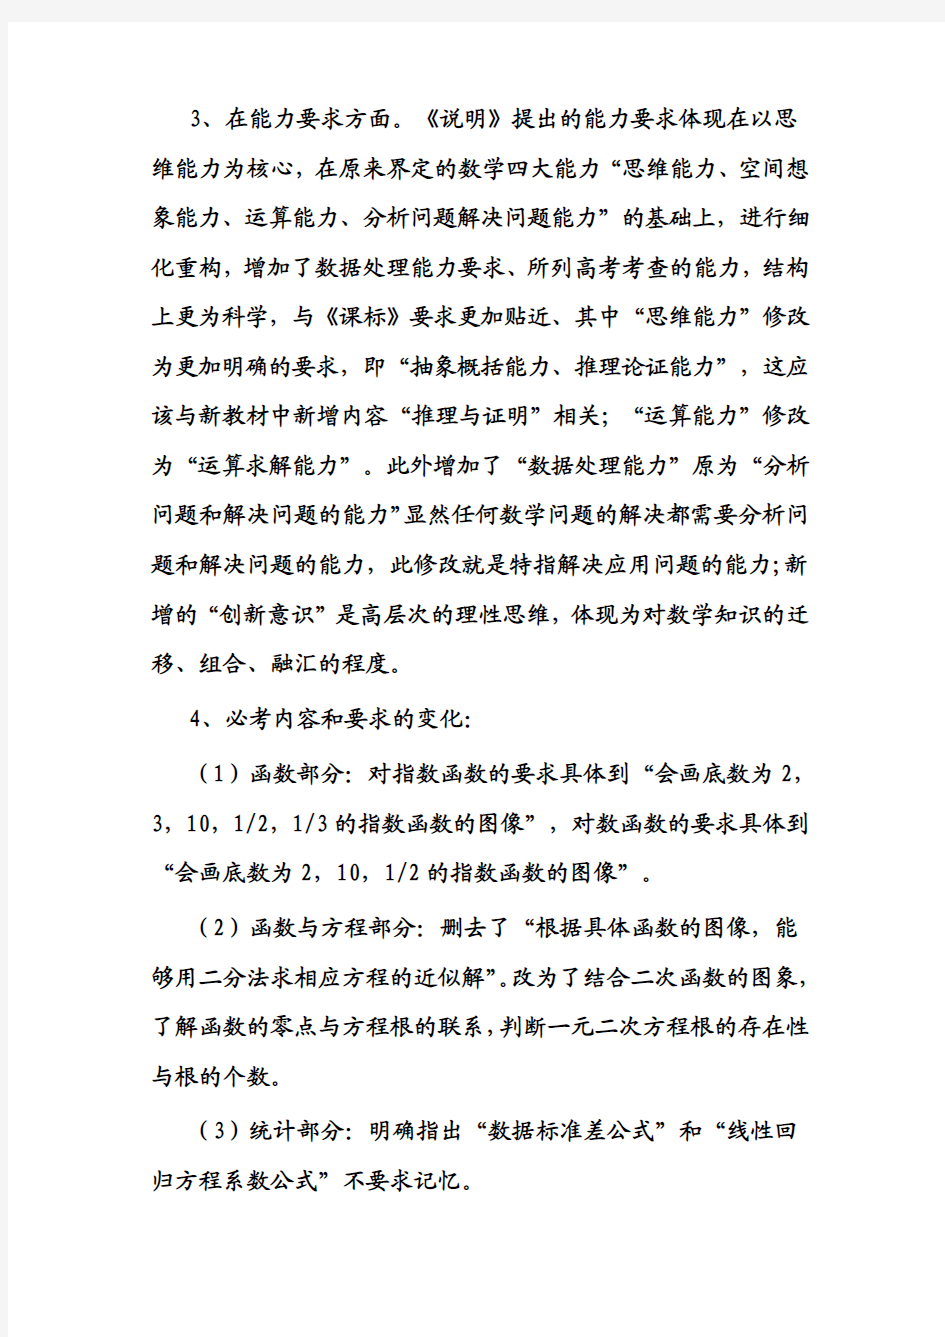 2012年辽宁高考数学考试说明解读及复习备考建议